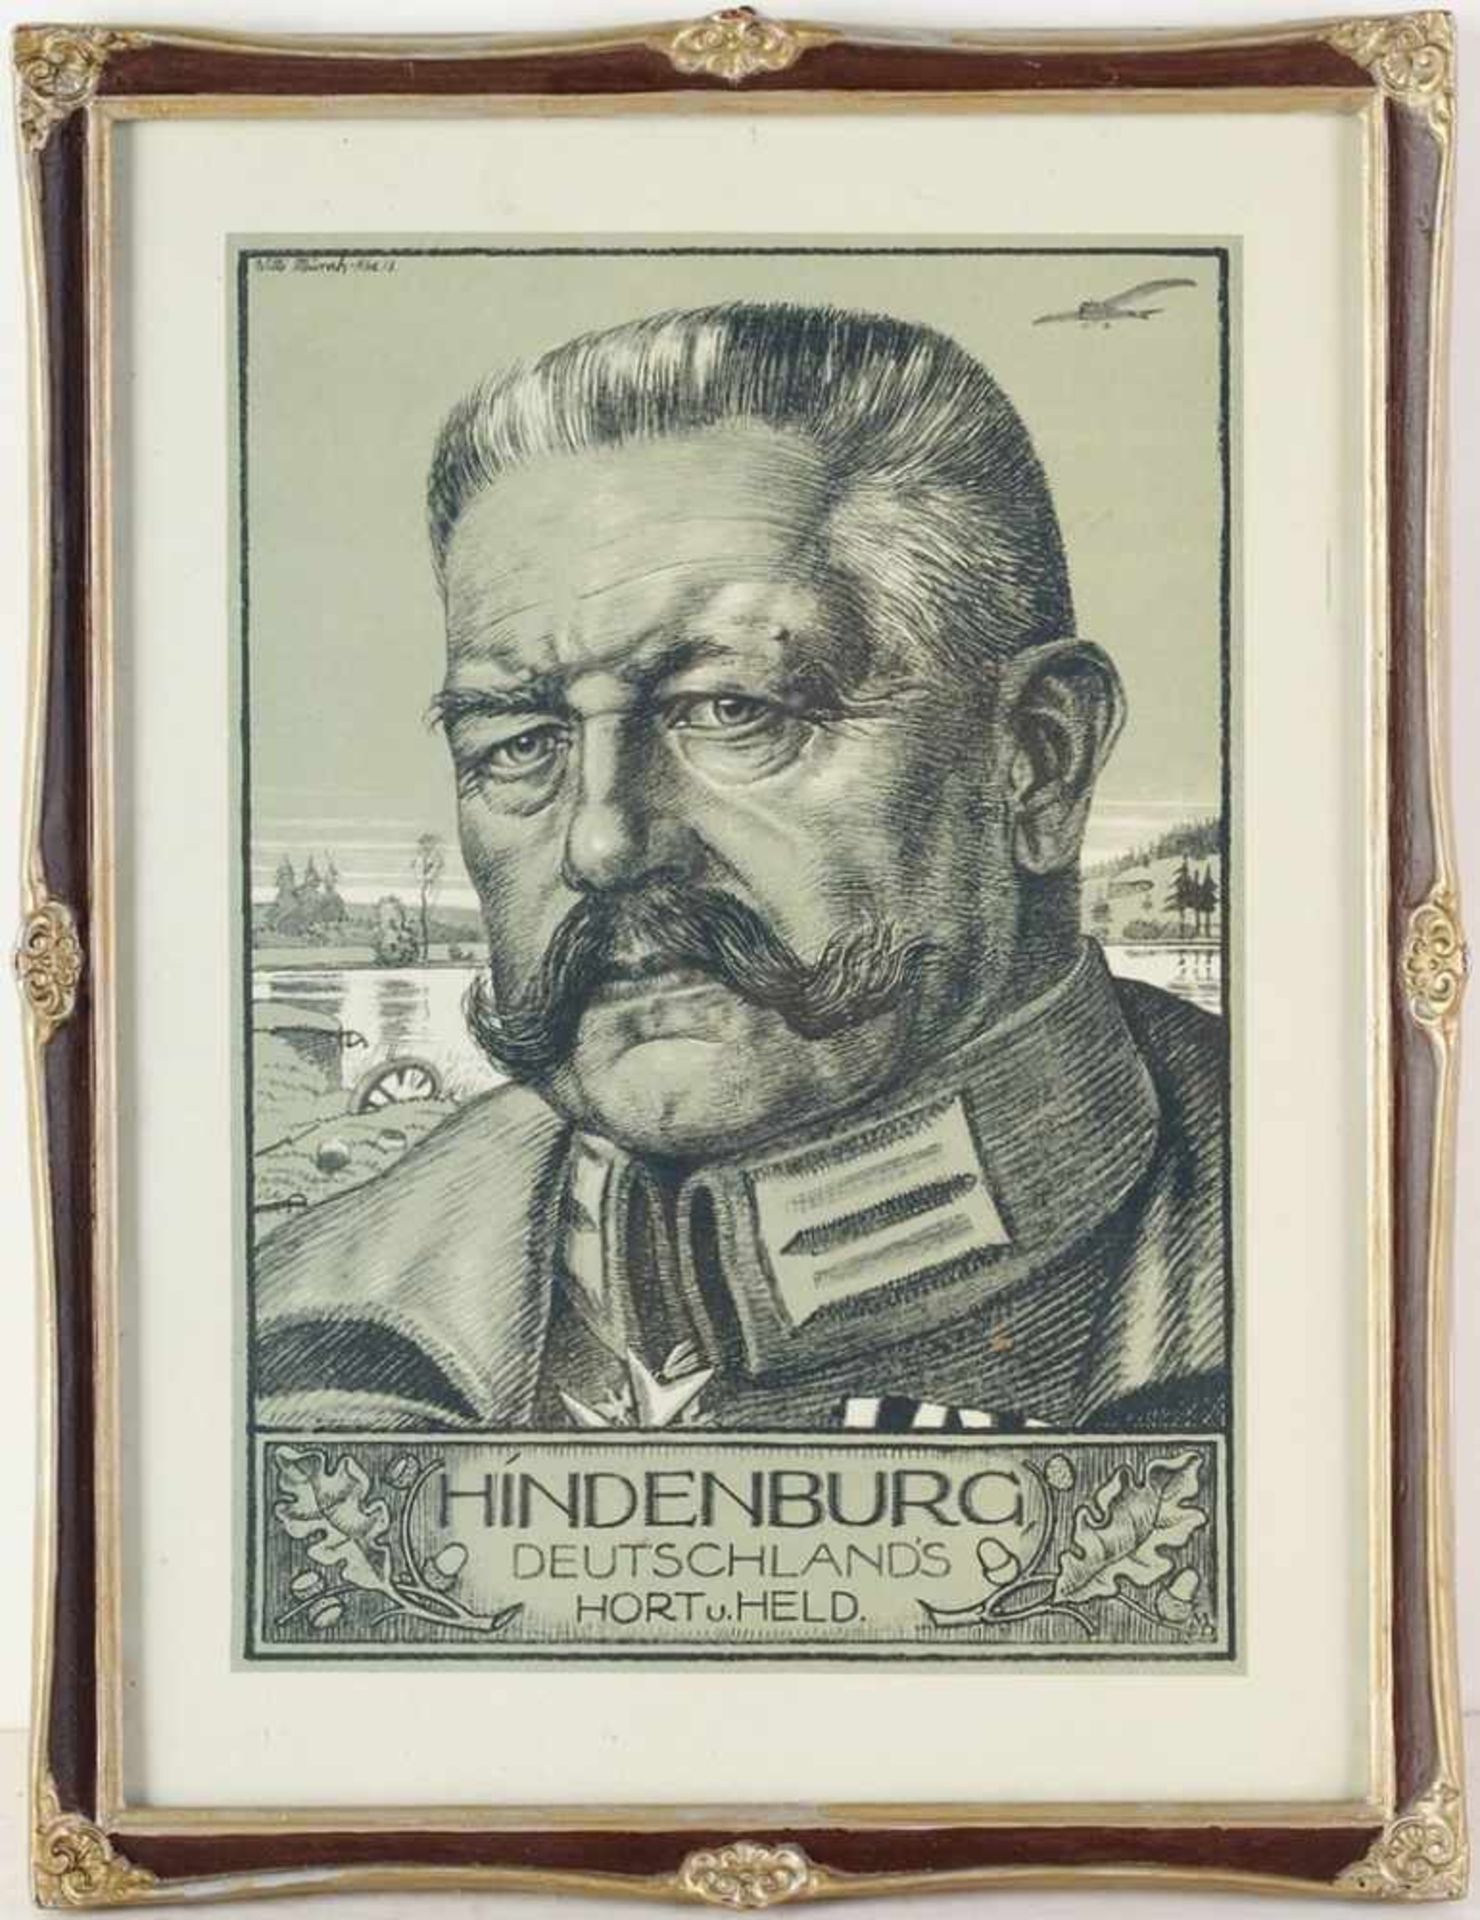 Hindenburg-PorträtLithographie. Porträt d. Generalfeldmarschalls Paul von Hindenburg (1847-1934) vor